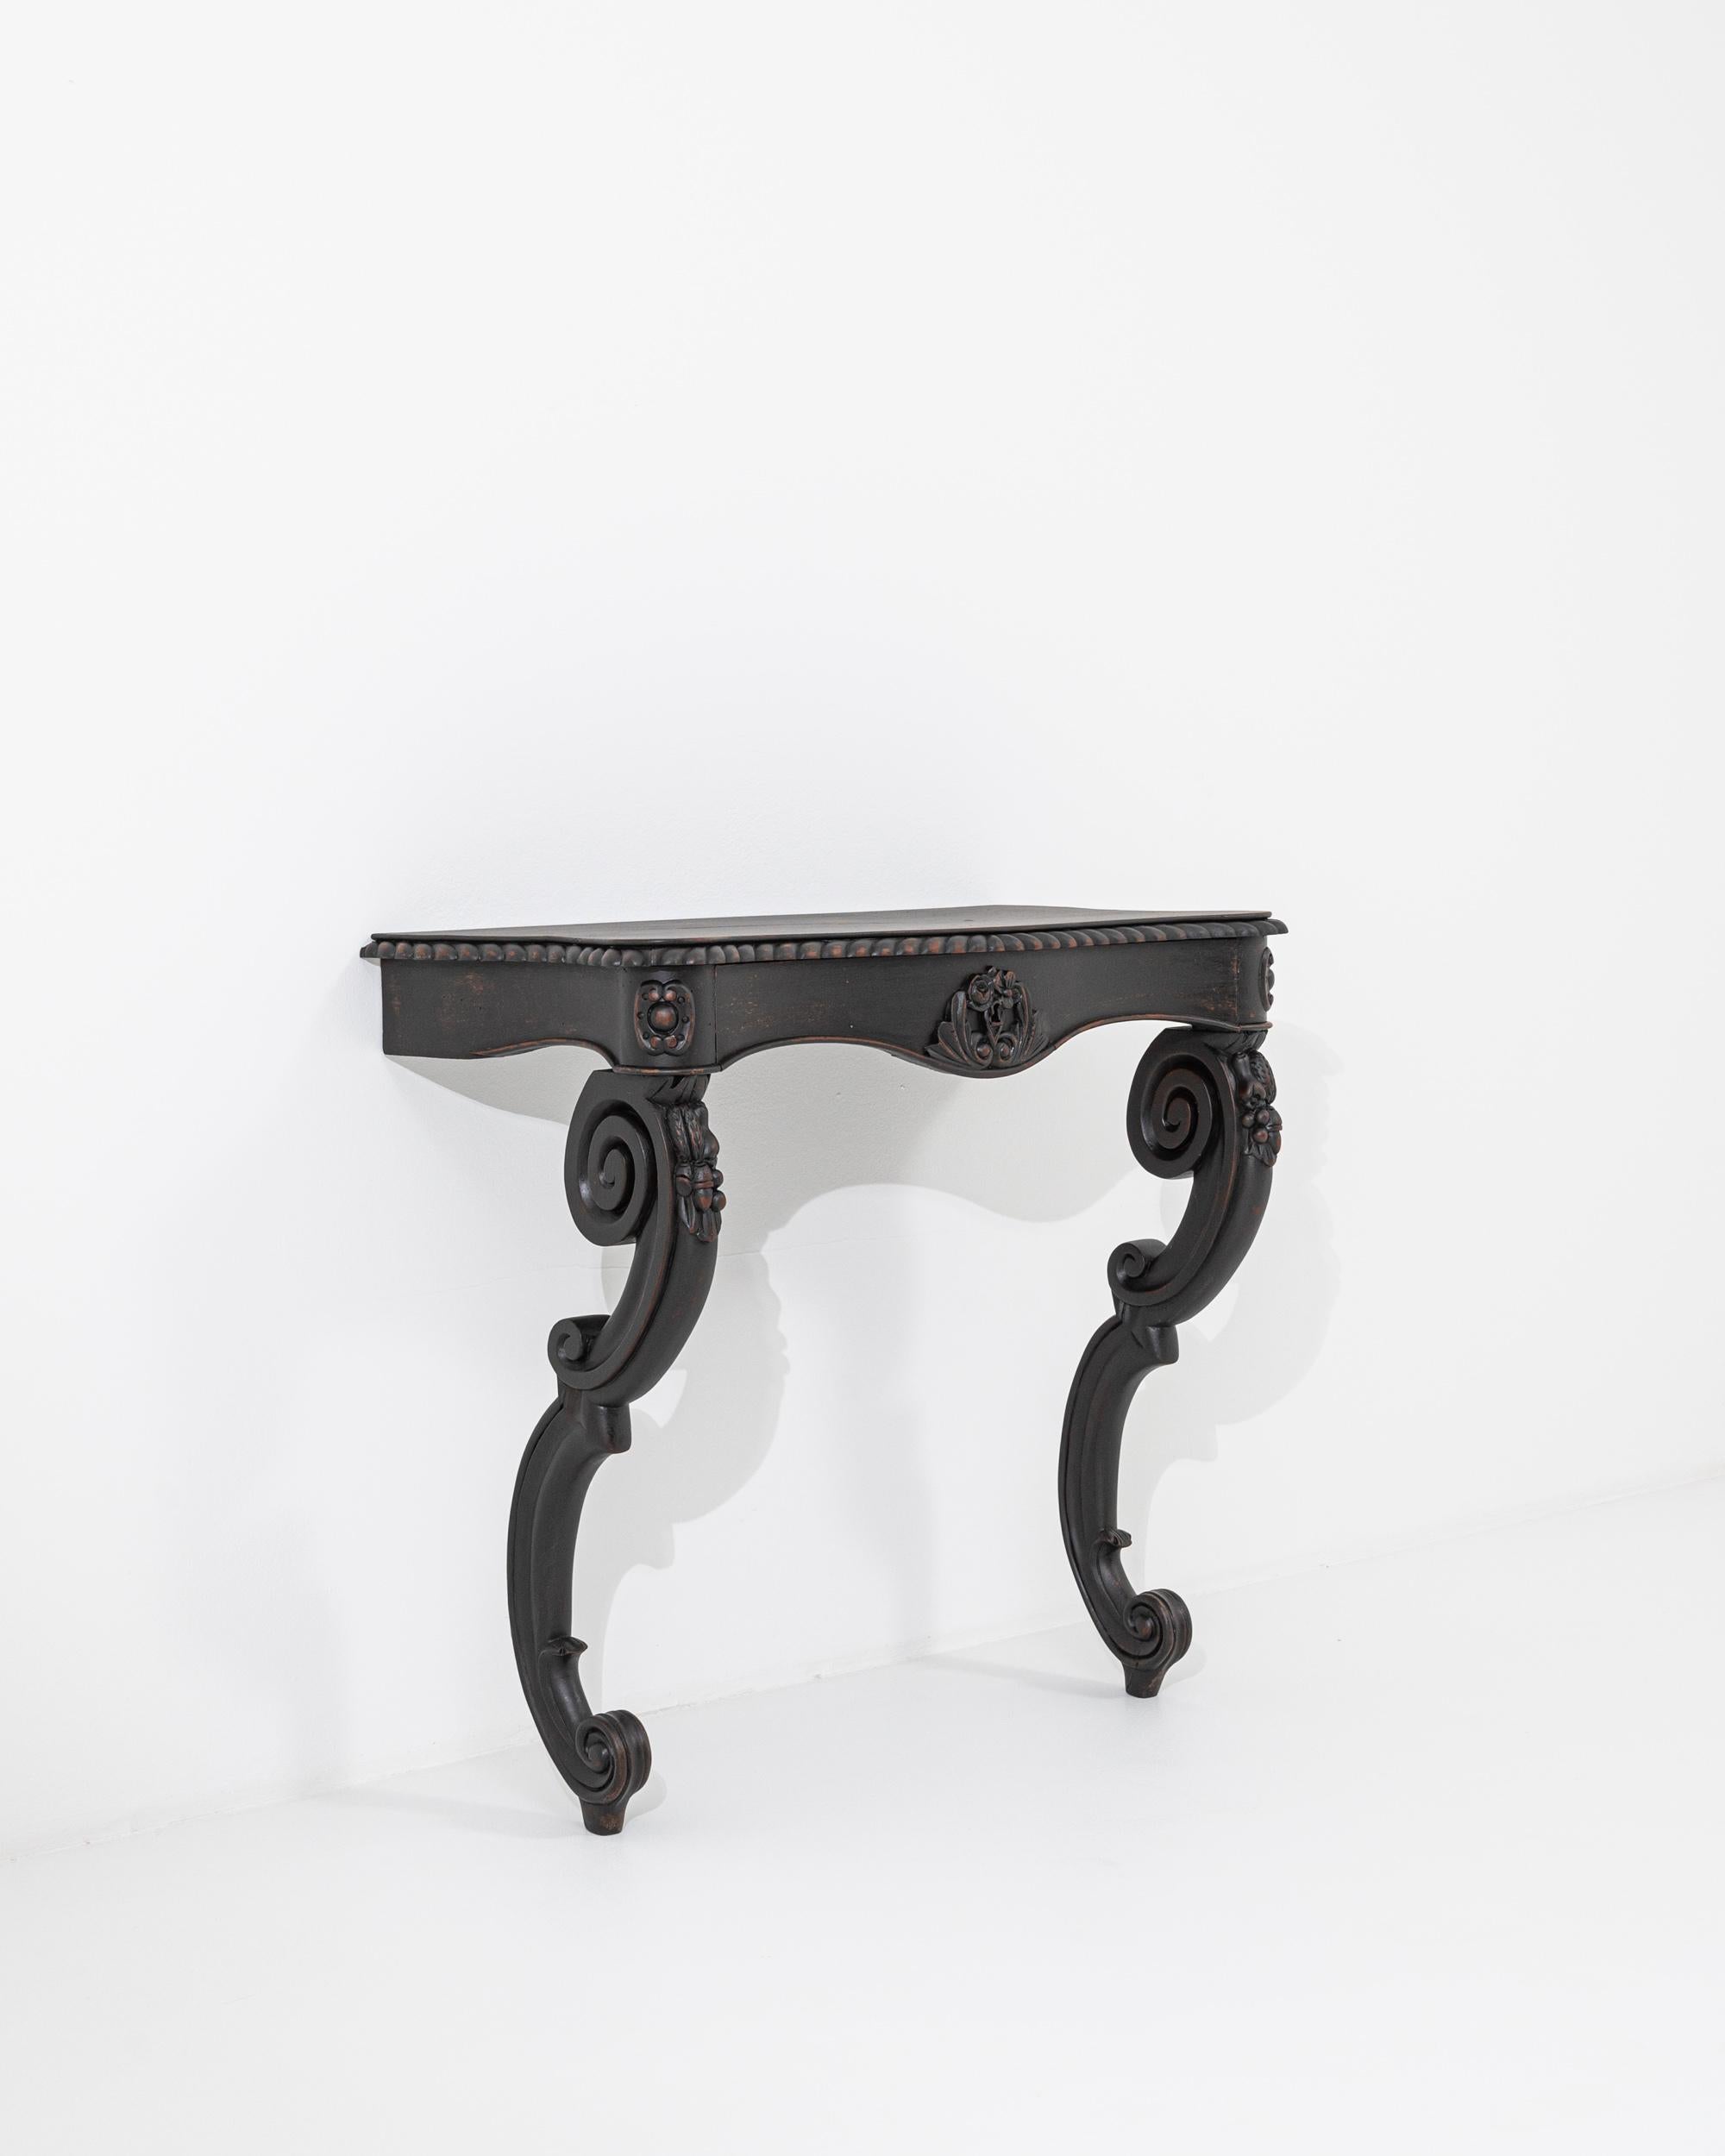 Console en bois créée en France au XIXe siècle. Cette table console a une gravité unique, construite pour donner l'impression qu'elle émerge directement du mur, avec ses pieds sculptés en spirale qui remontent et s'appuient gracieusement sur le sol.